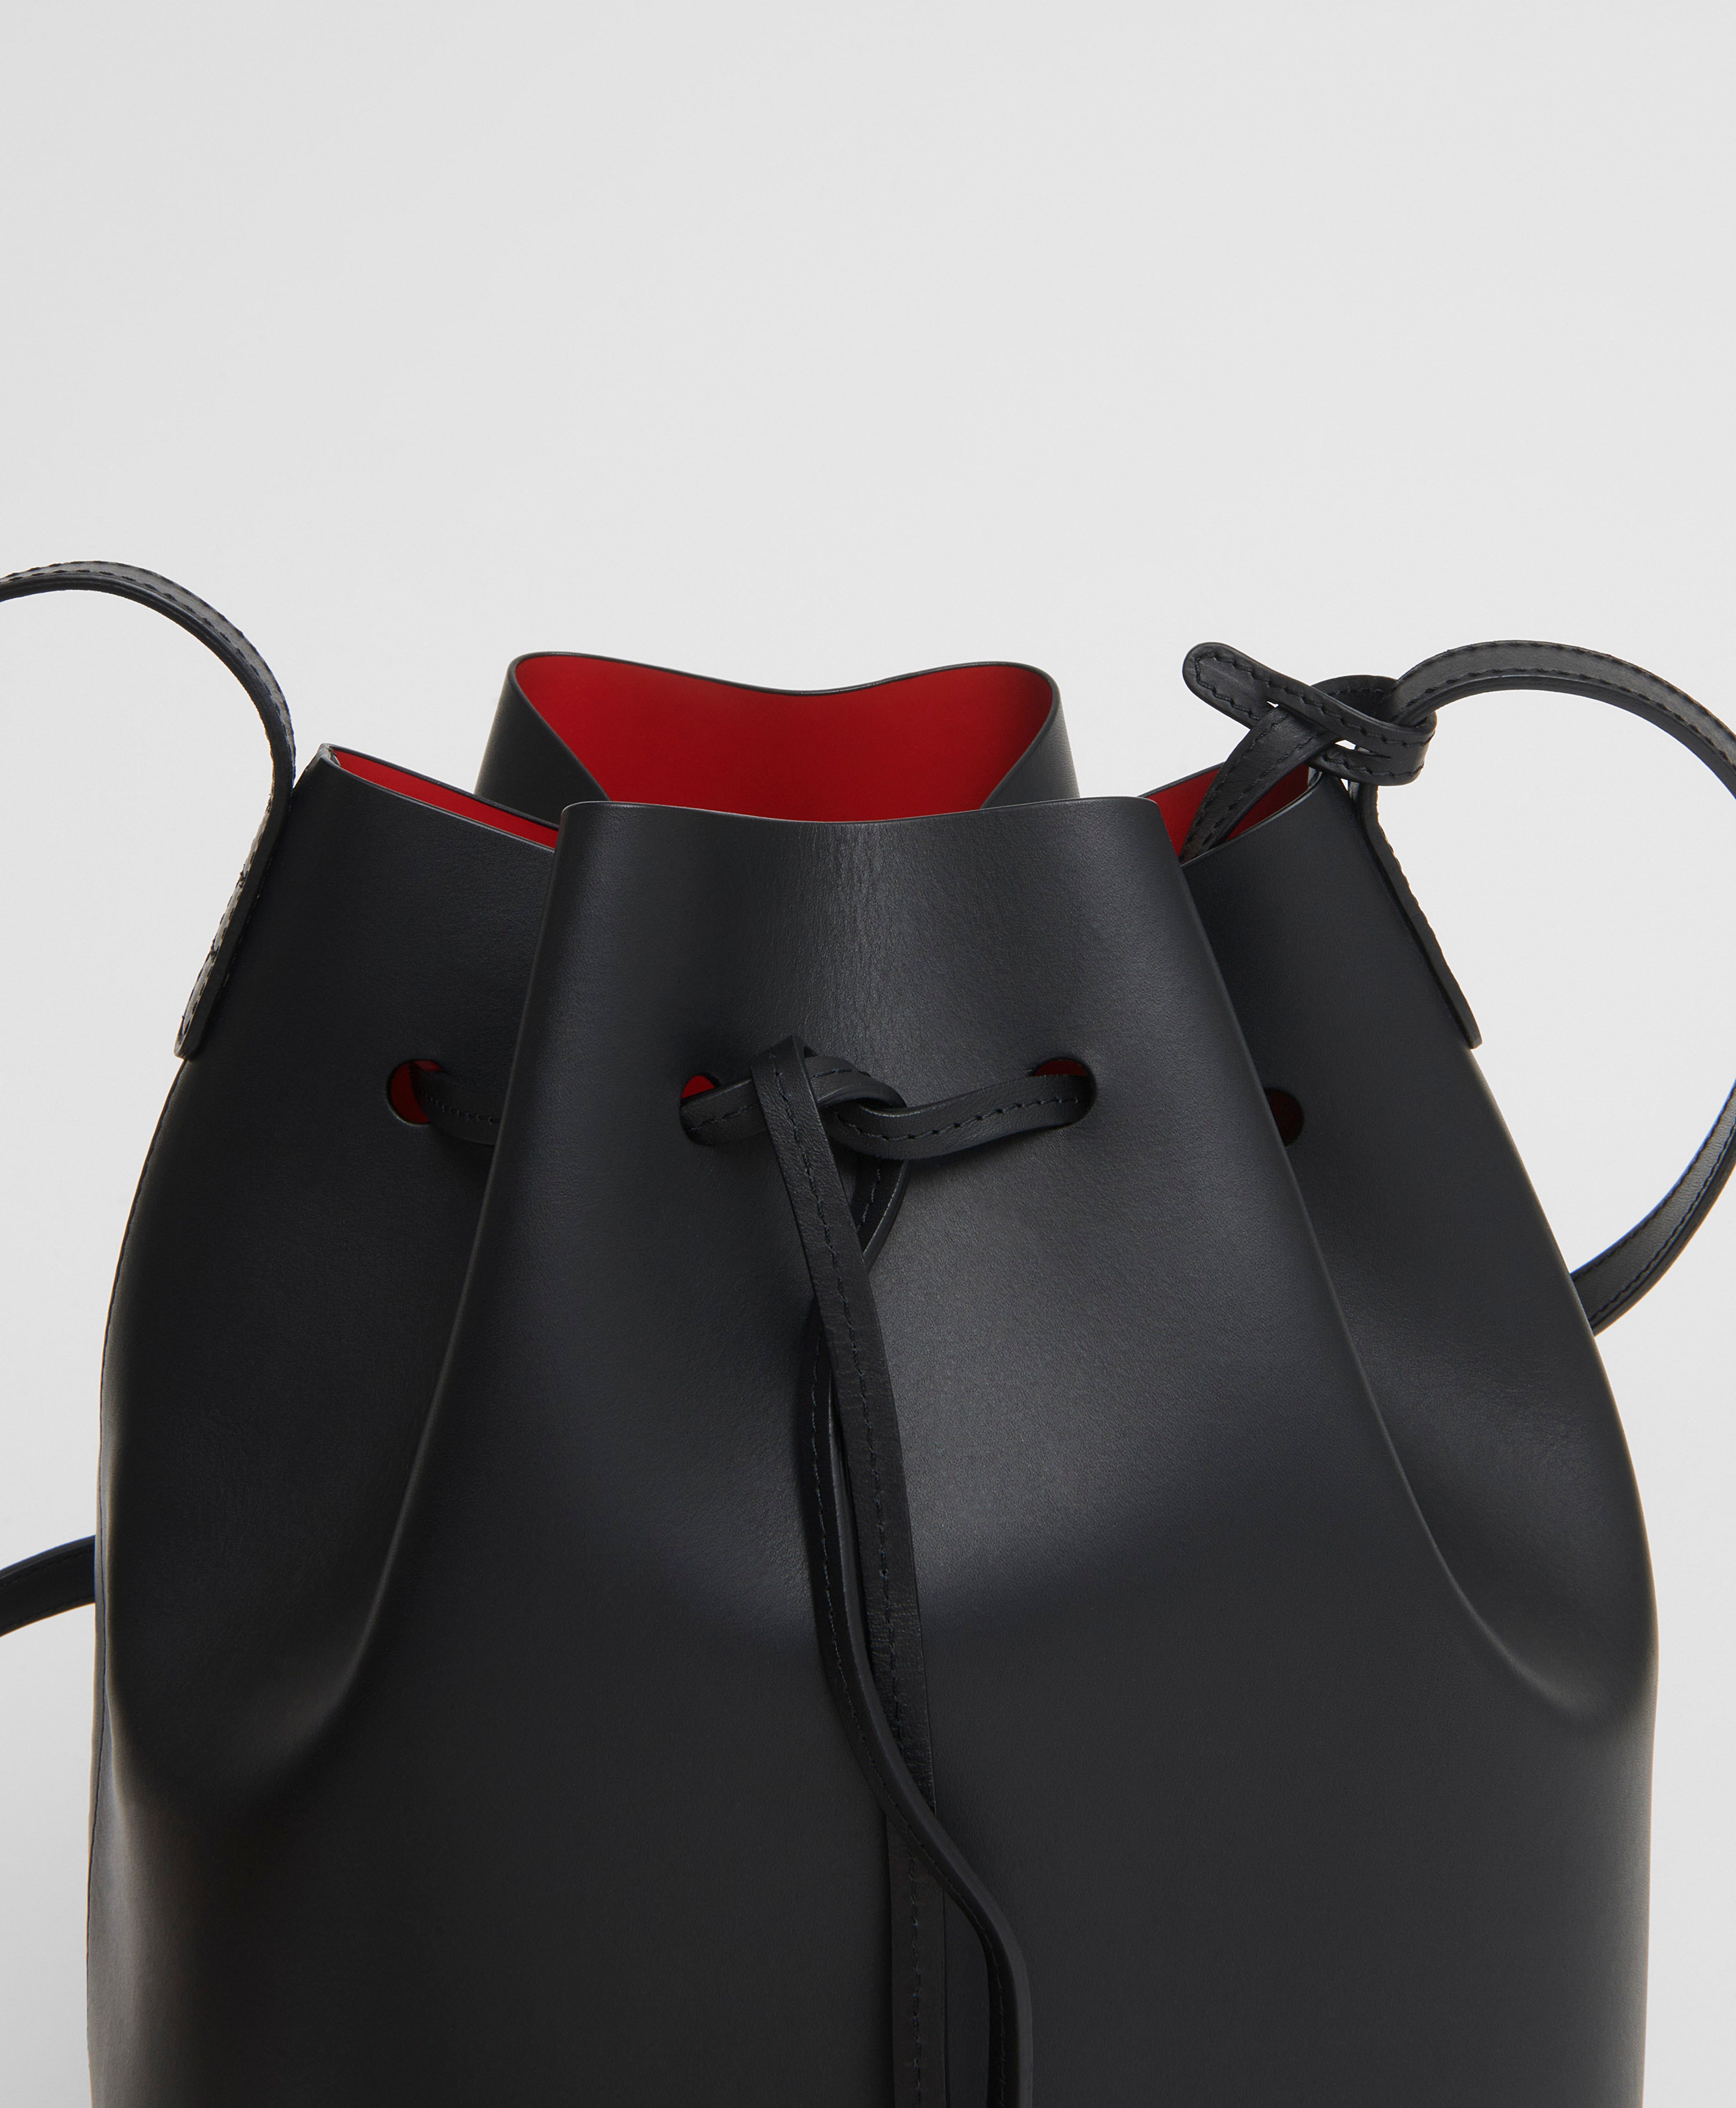 Mansur Gavriel - Mini Pleated Bucket Bag in Flamma Lambskin